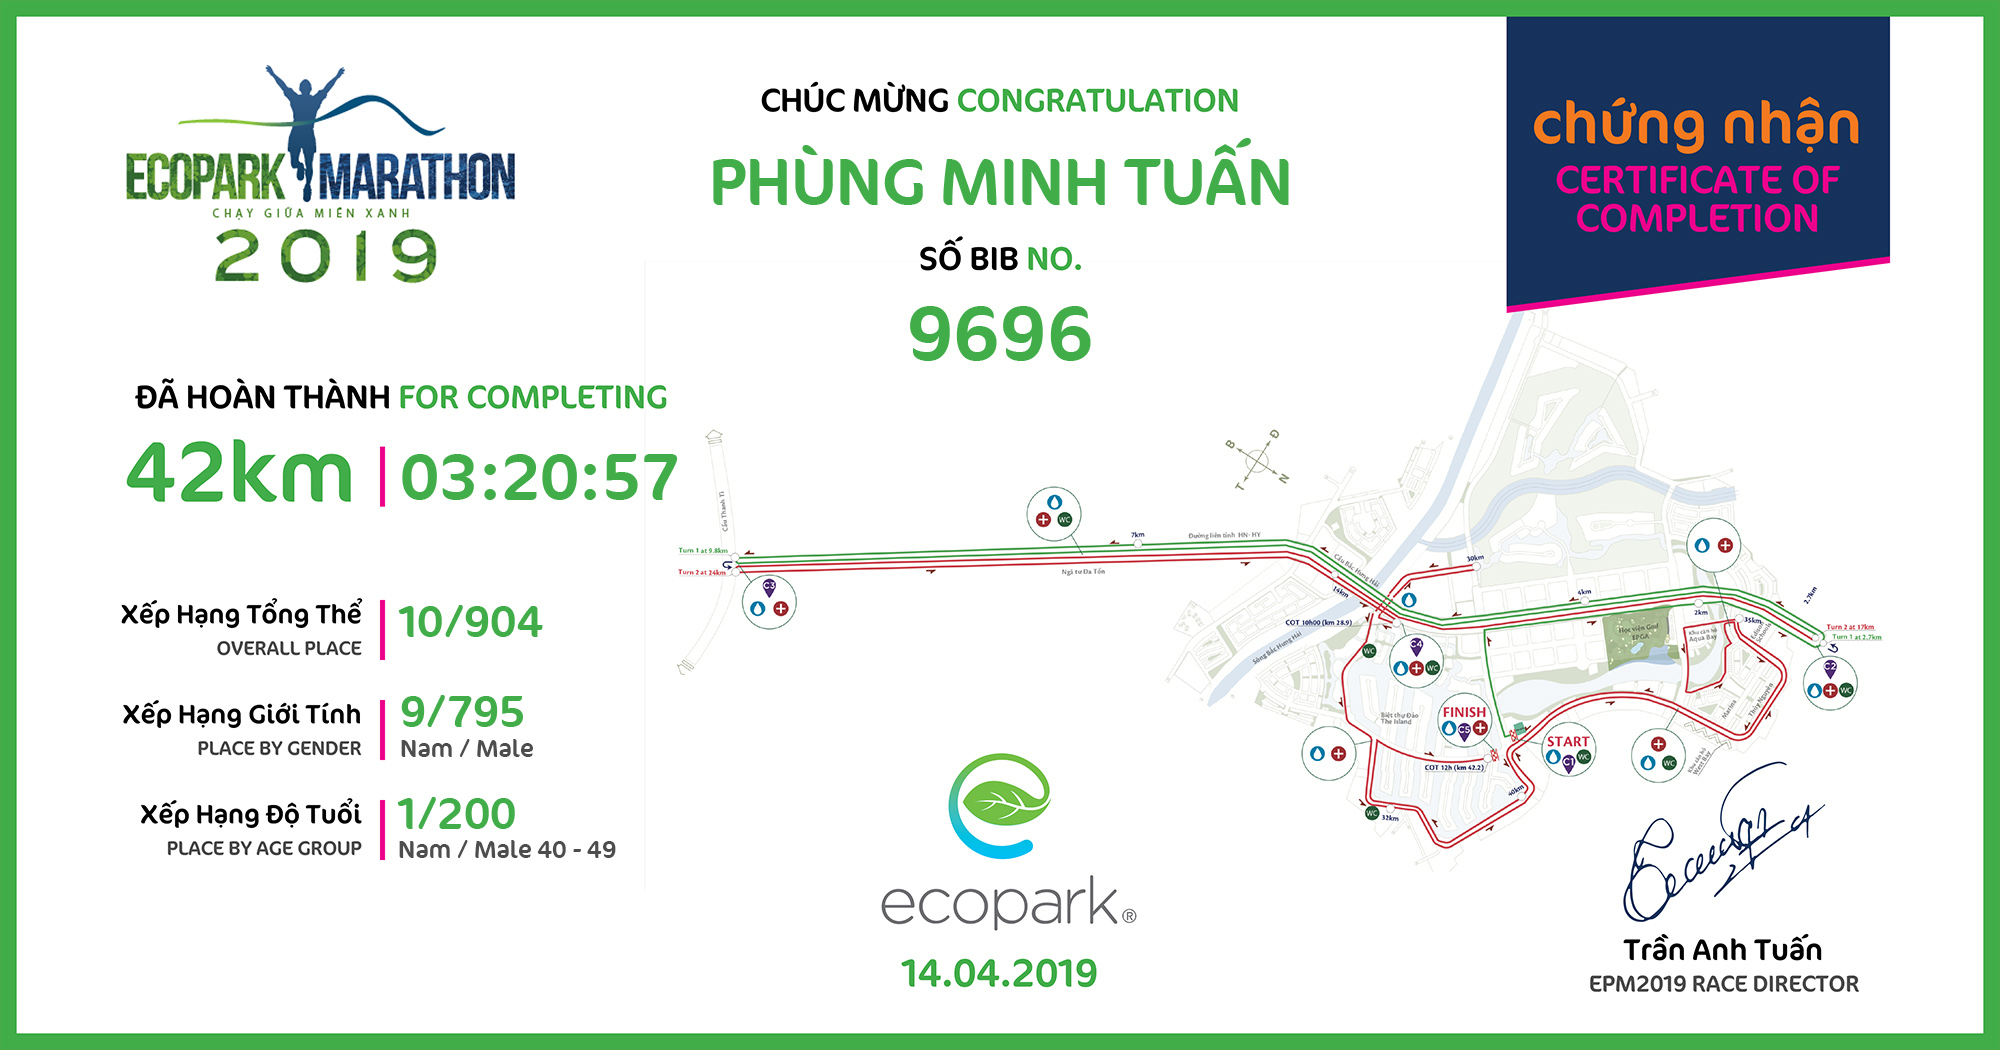 9696 - Phùng Minh Tuấn